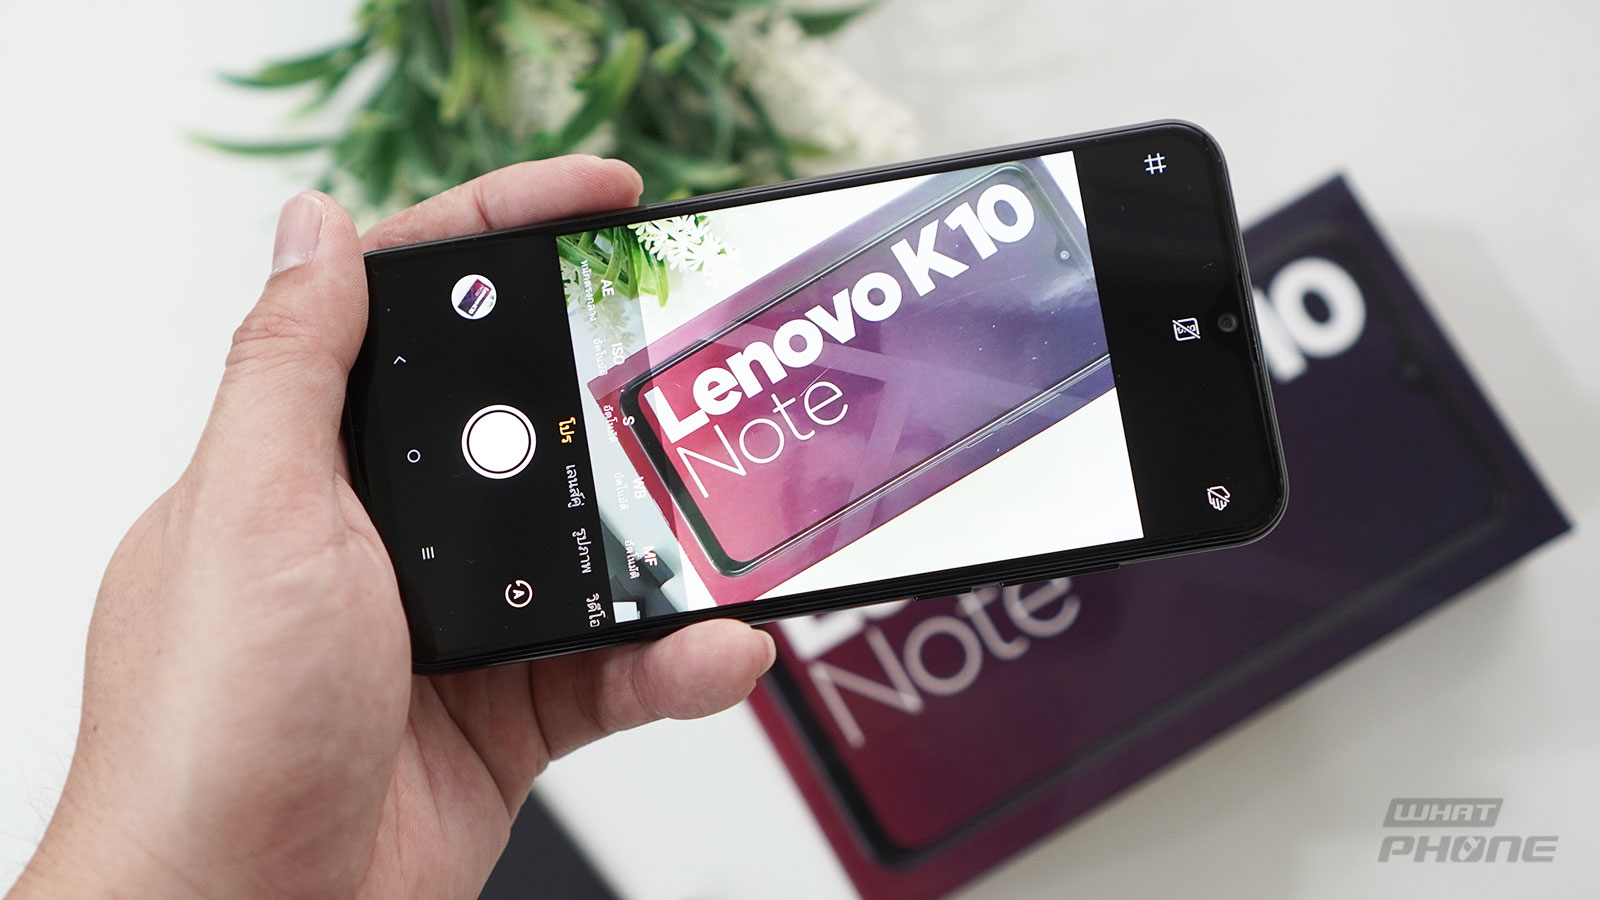 รีวิว Lenovo K10 Note มือถือระดับกลาง ราคาต่ำหมื่น 7,490 บาท